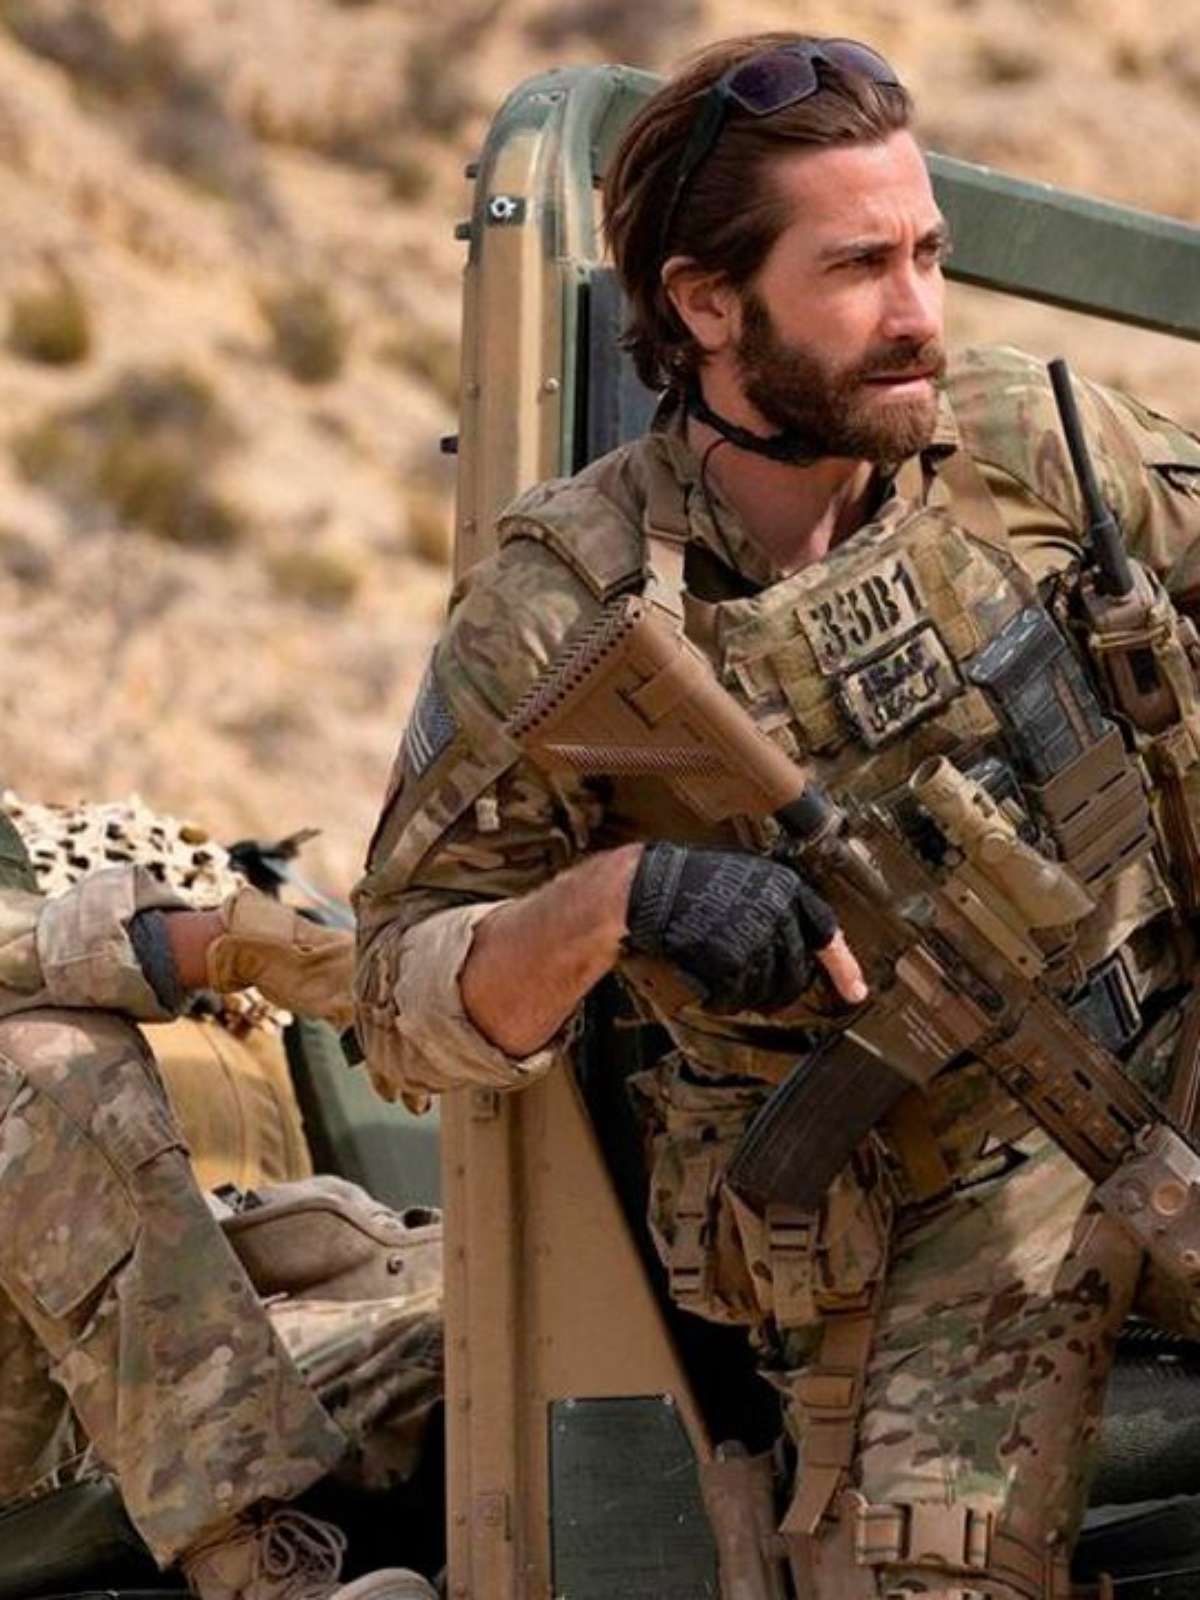 Henry Cavill e Jake Gyllenhaal vão estrelar novo filme de ação de